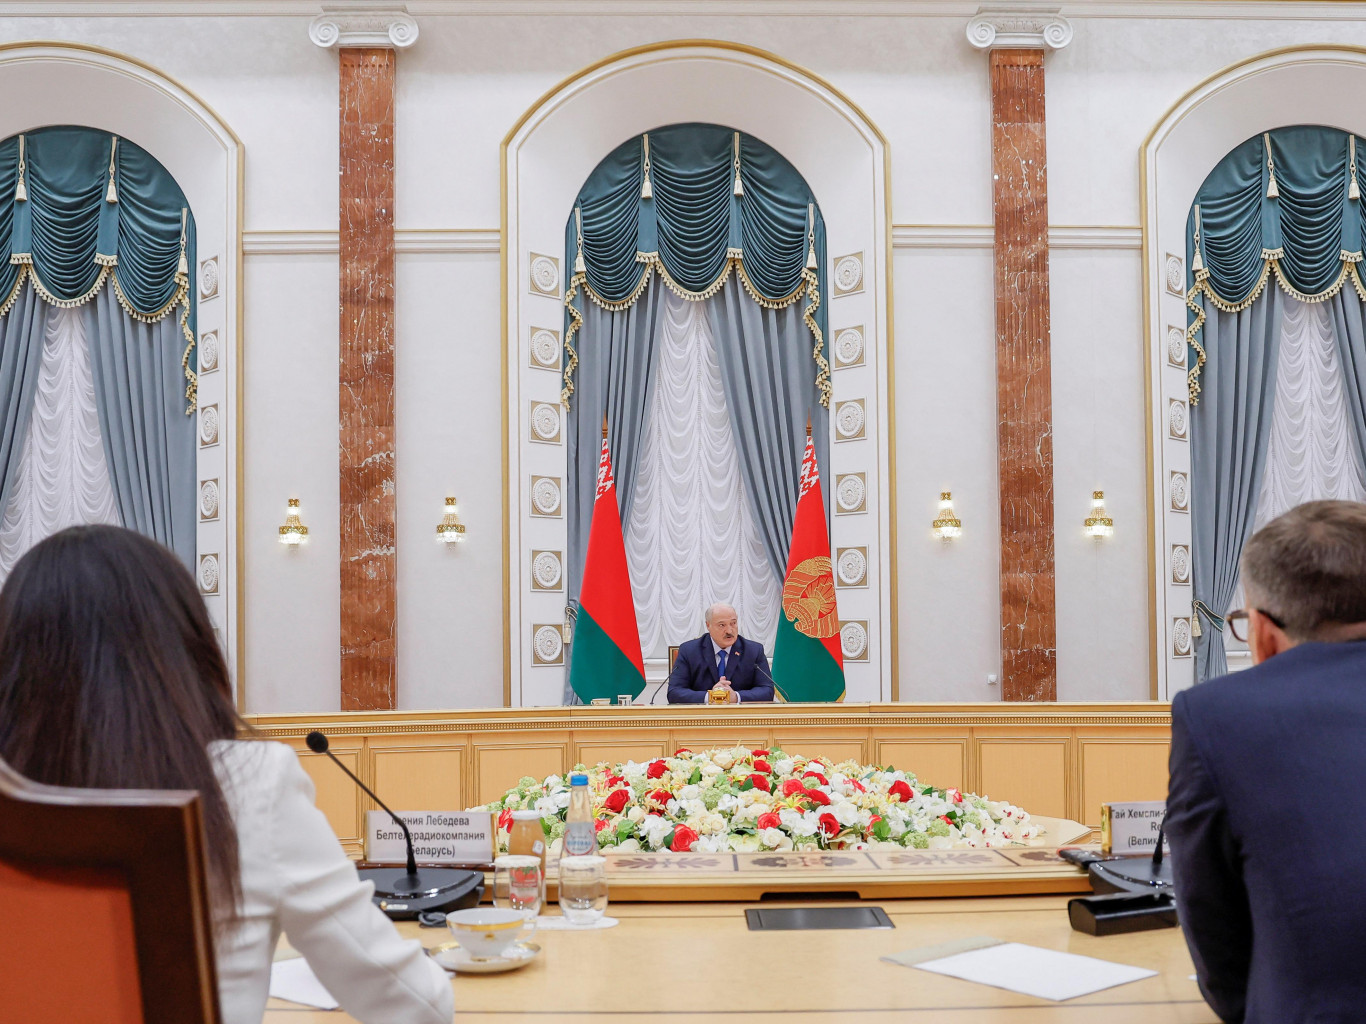 Фейки недели: бомбическая пресс-конференция Лукашенко, одиночество и анафема Зеленского